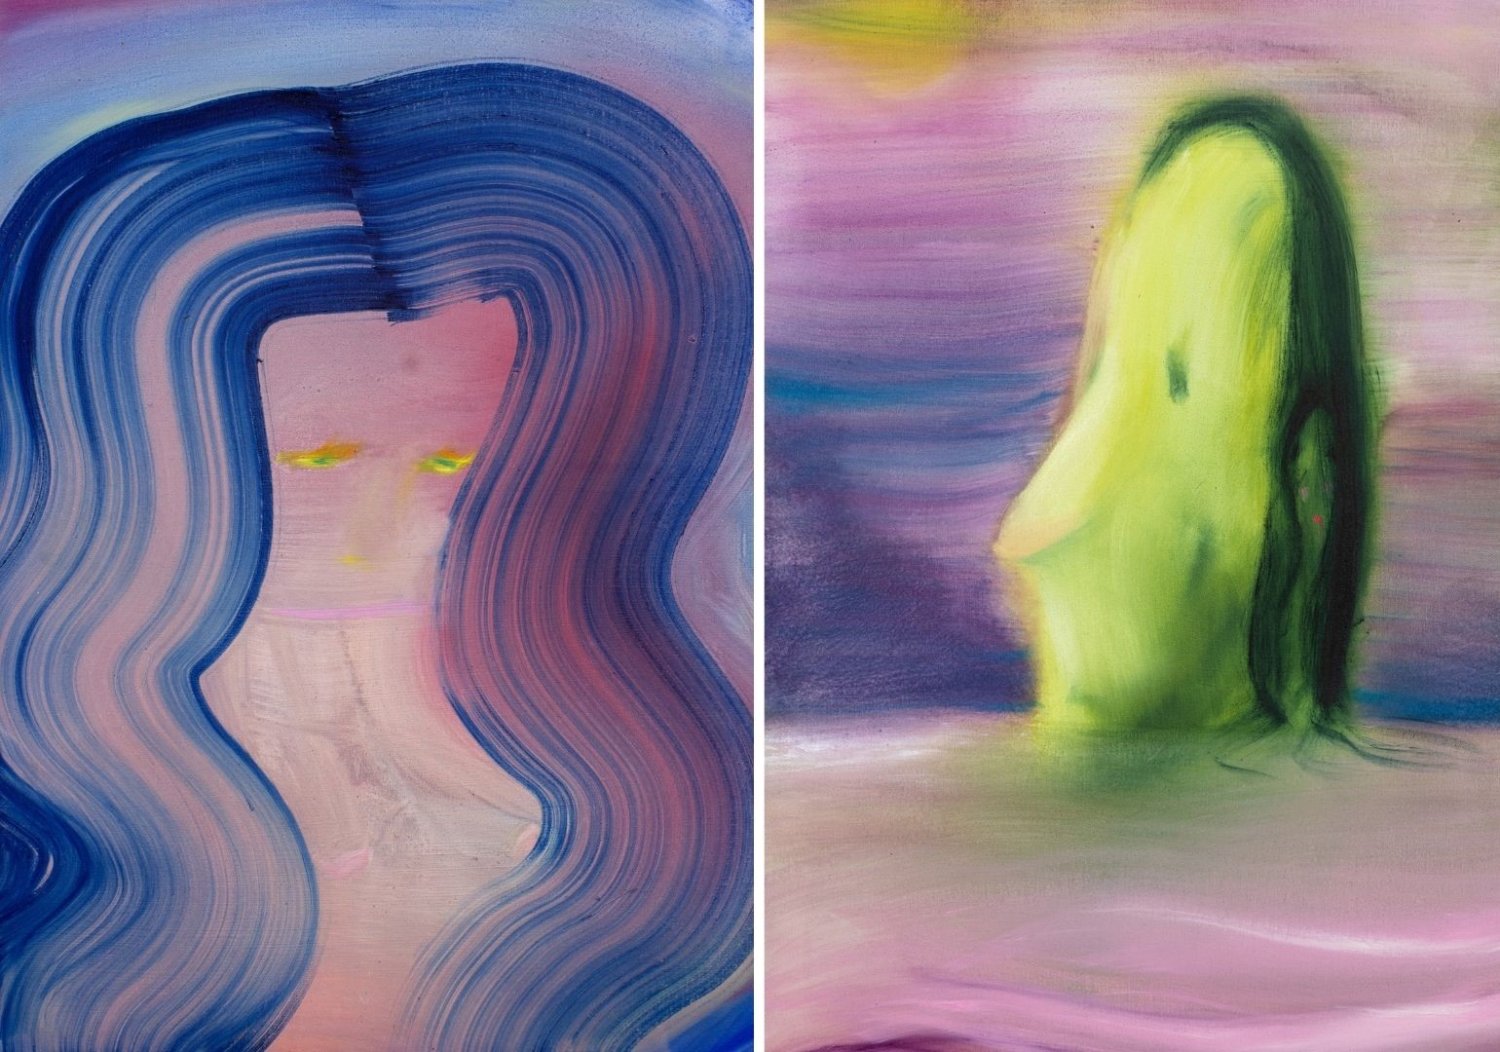 Farbenfrohe Bildkompositionen von Aneta Kajzer mit figürlichen Elementen, wie Gesichtern, Haaren, Augen und Mund